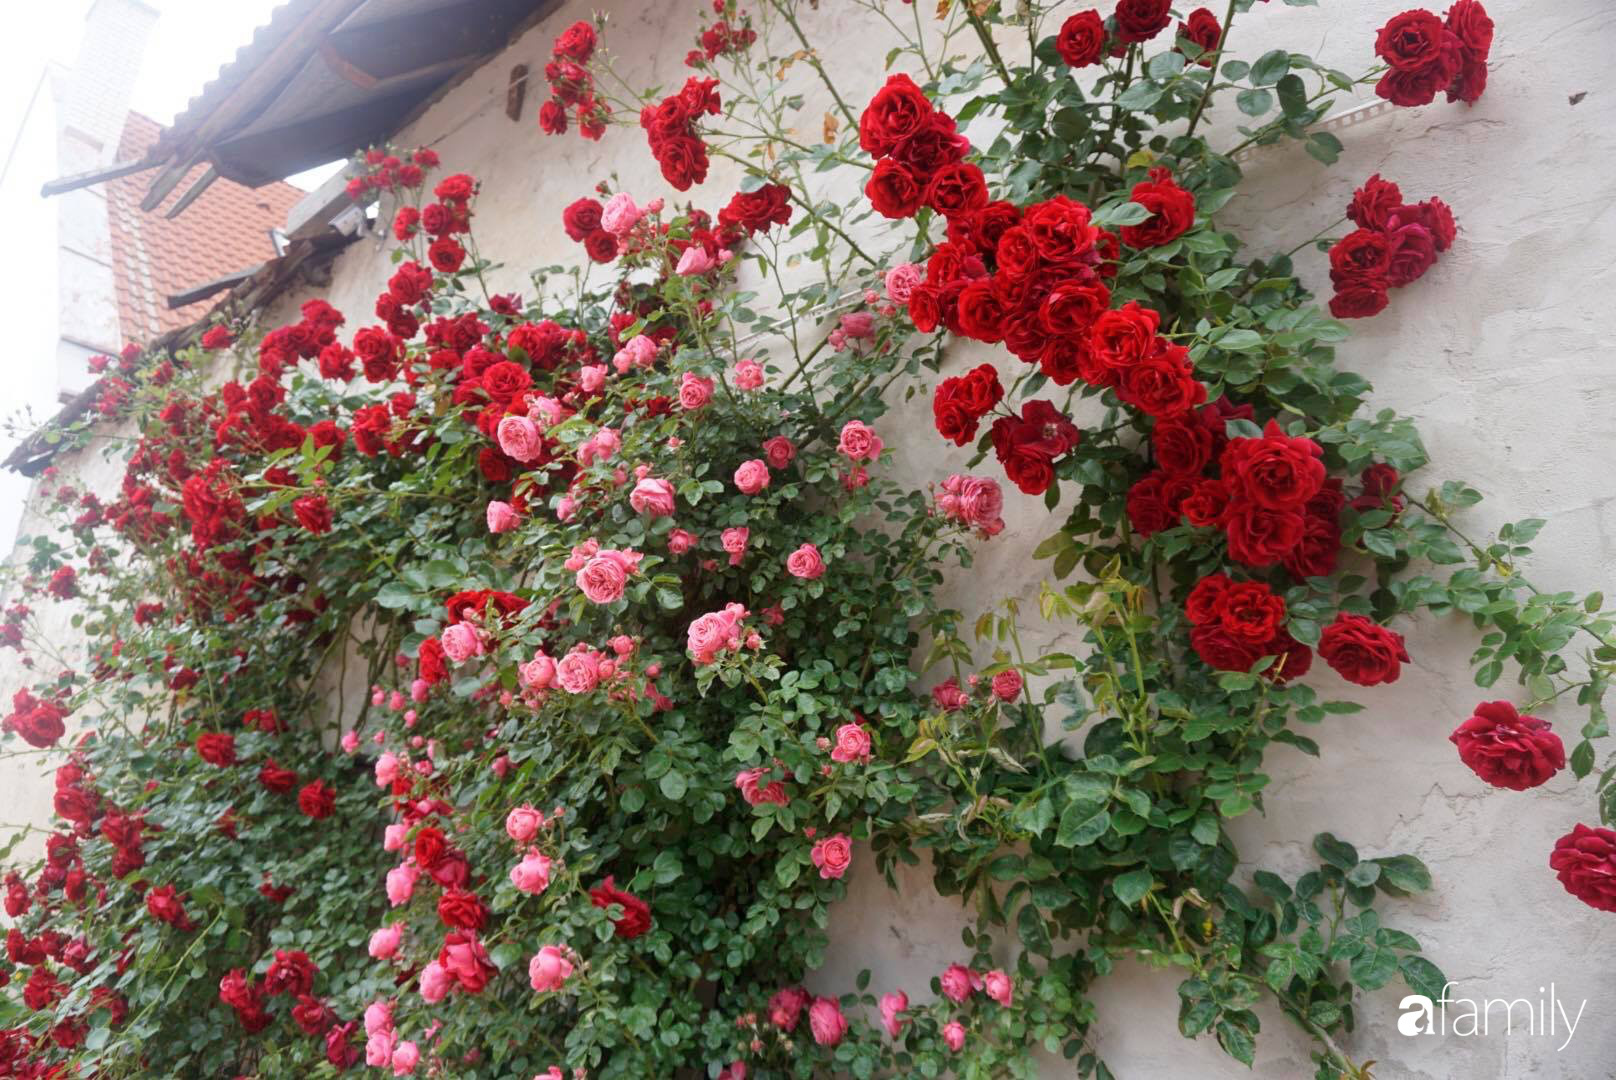  Vườn hồng hàng nghìn bông nở cùng lúc.